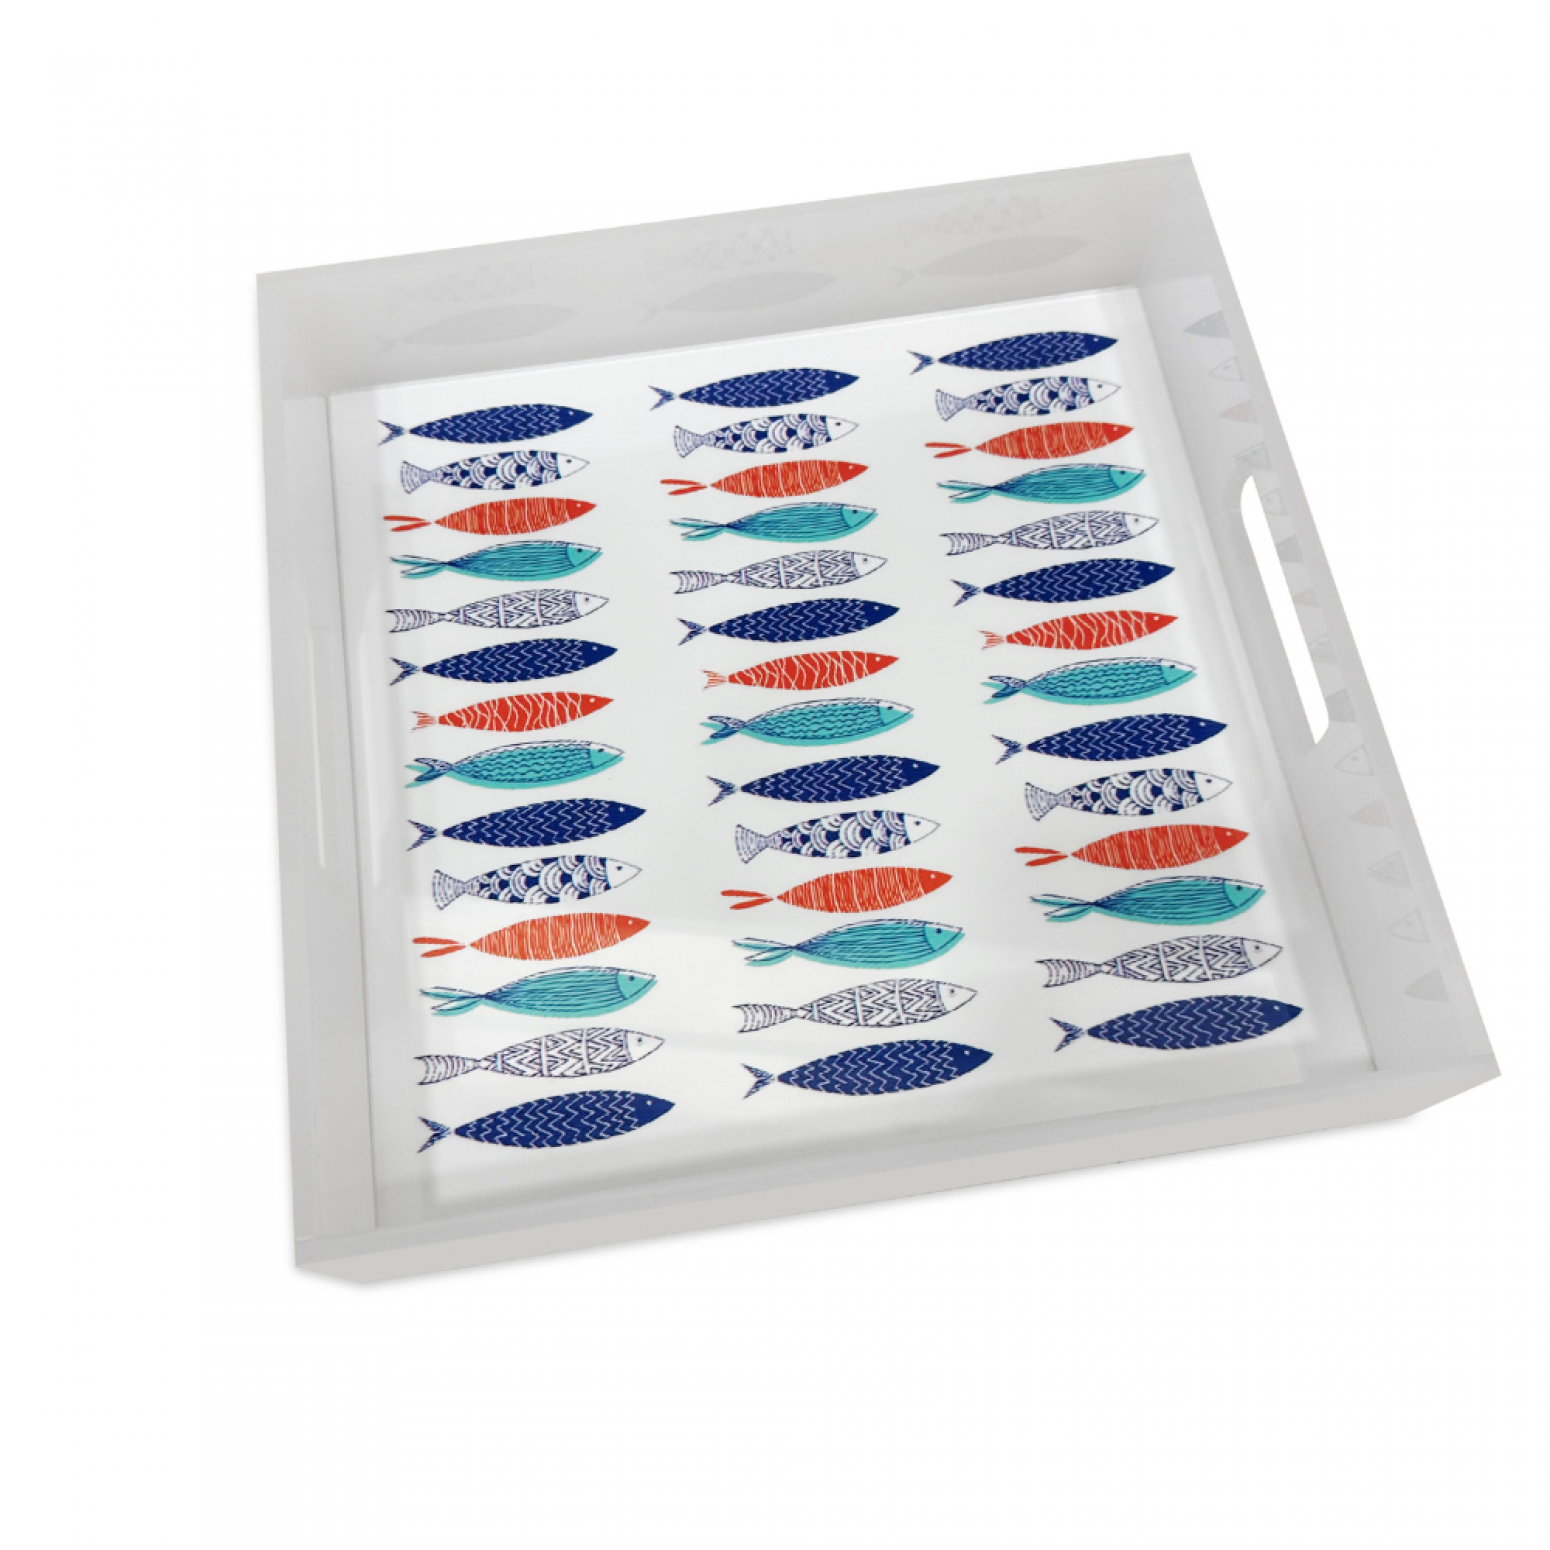 White plexiglass tray with fish 25 x 25 x 5.20cm, ac1704 GIFTS Κοσμηματα - chrilia.gr